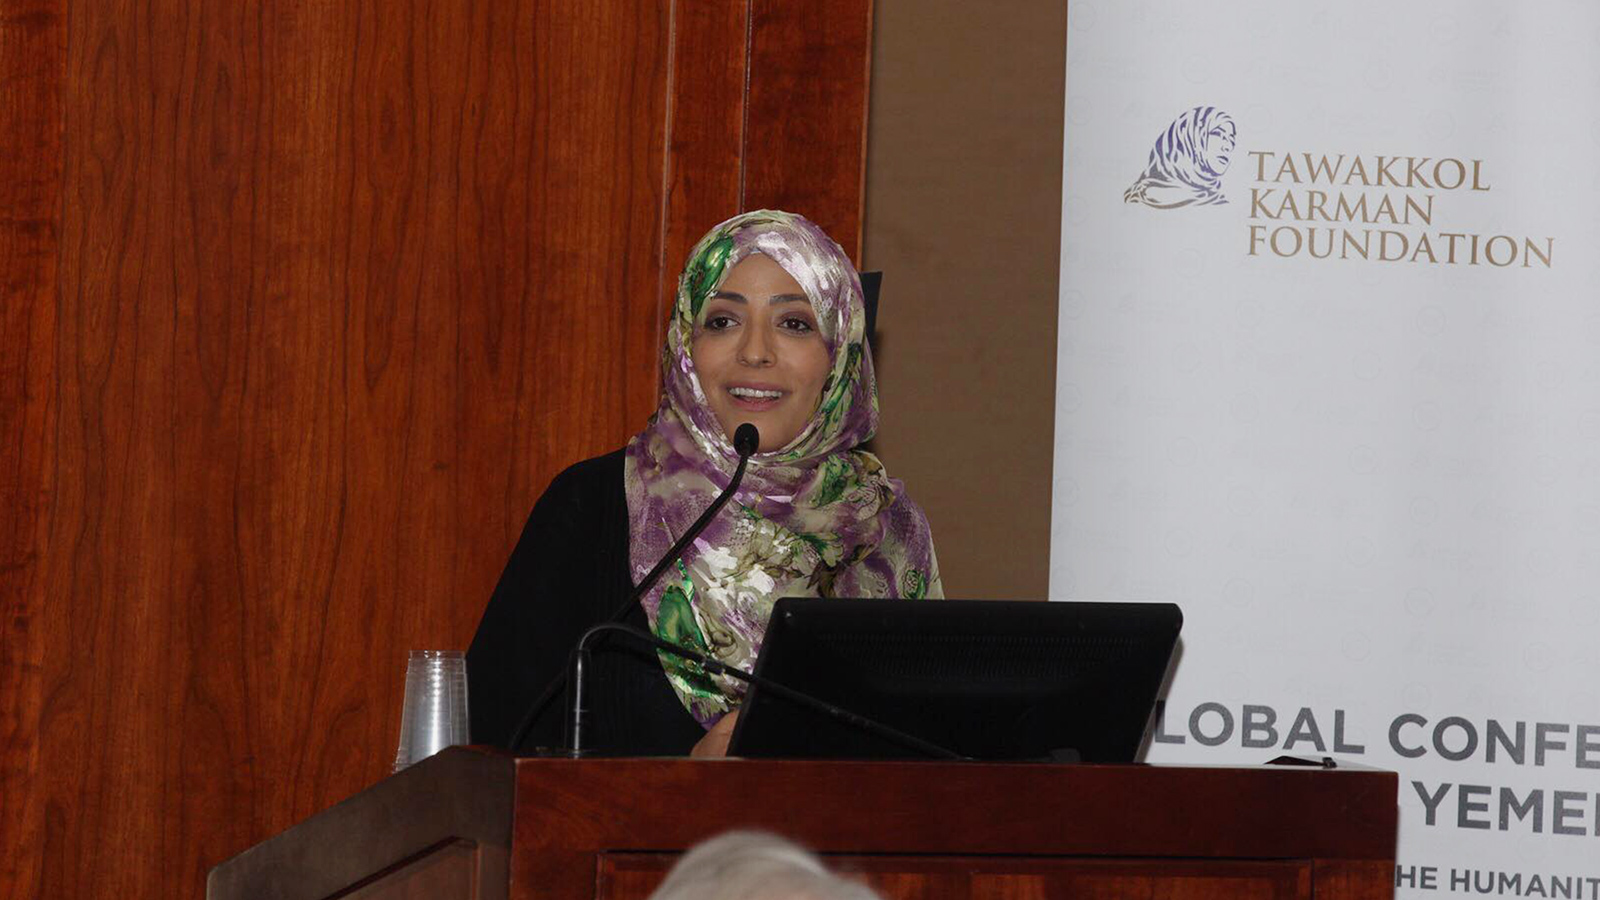 ‪الناشطة الحقوقية توكل كرمان تُعد واحدة من أبرز المدافعين عن حرية الإنسان والمرأة في اليمن‬ (الجزيرة)